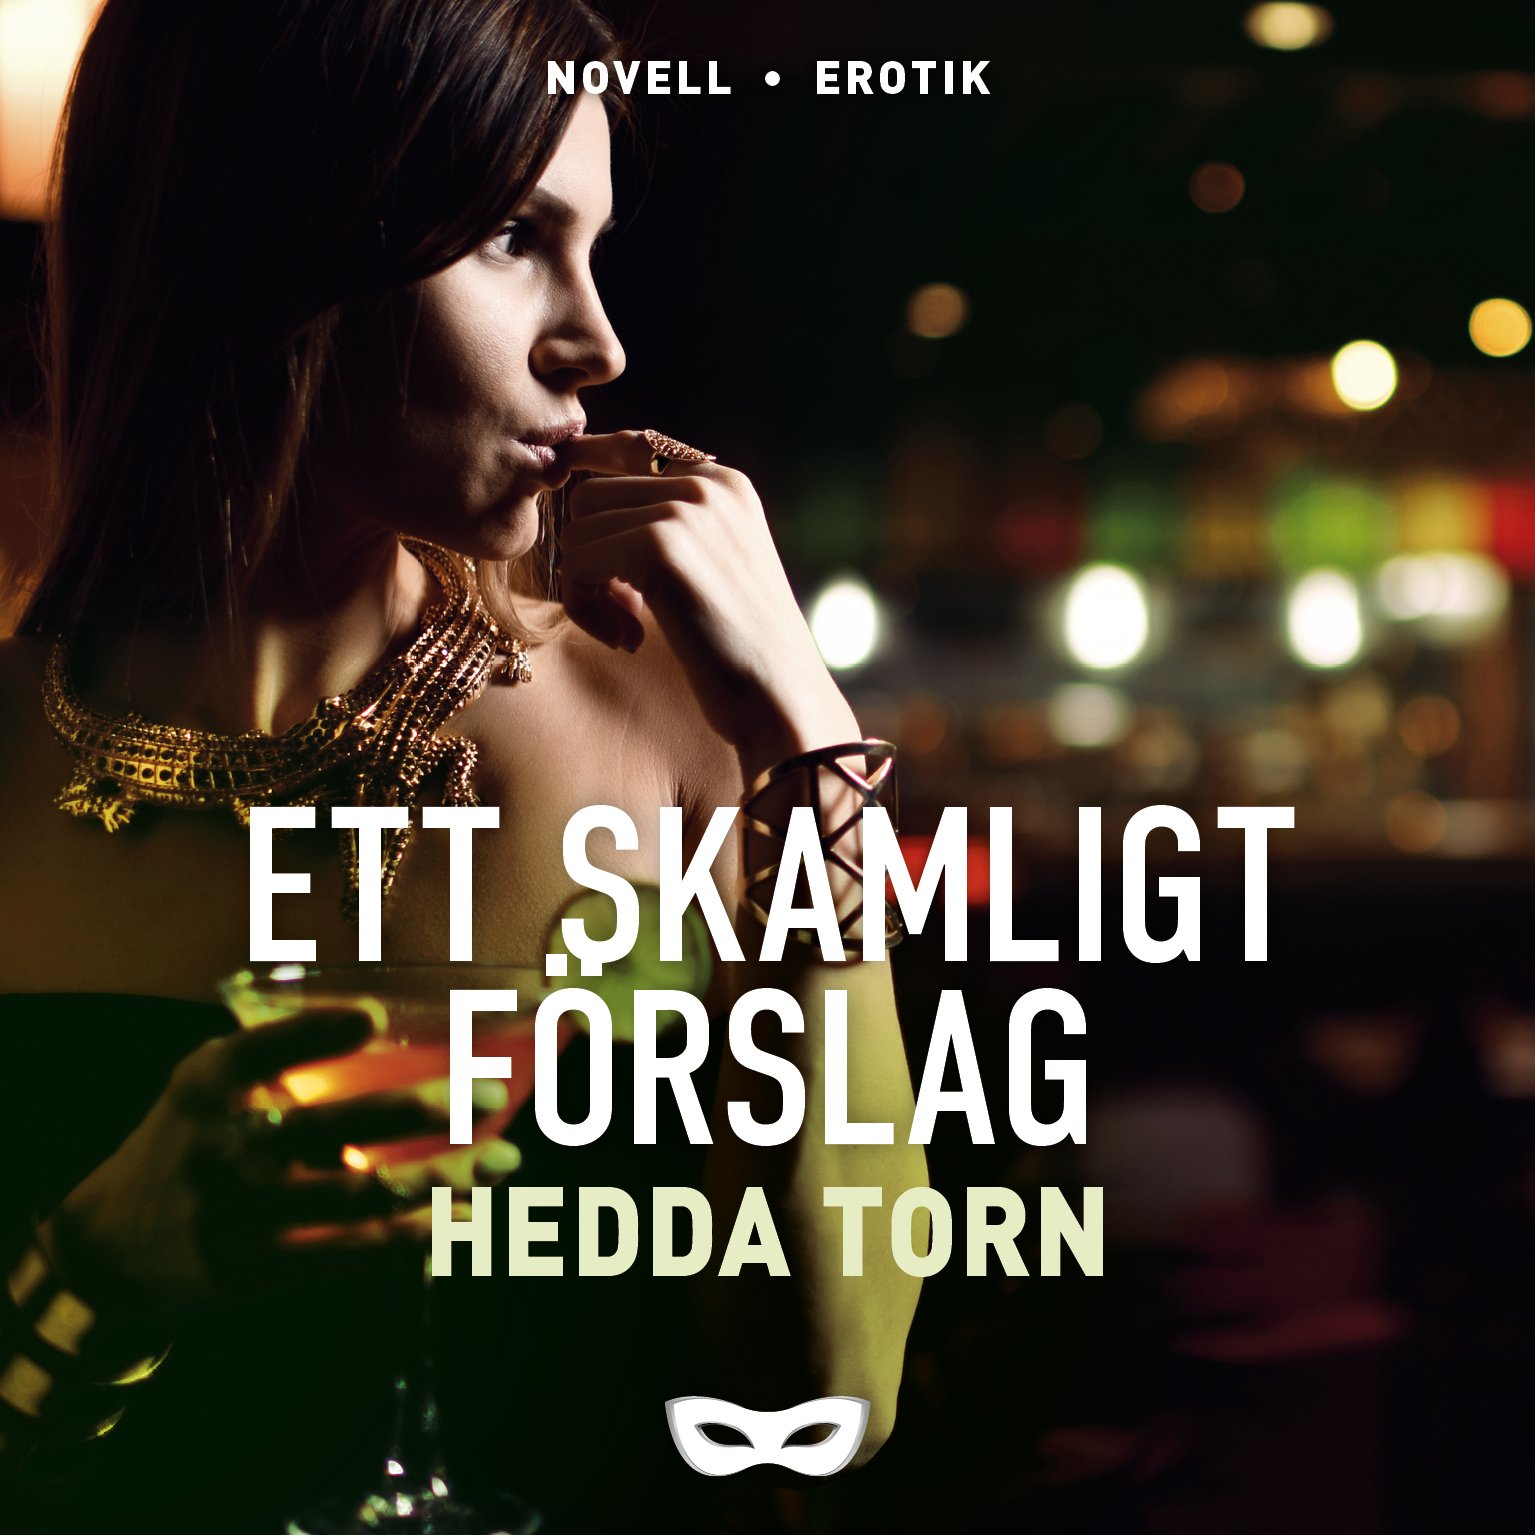 HEDDA2 Hedda Torn Ett skamlight förslag omslag audio.jpg